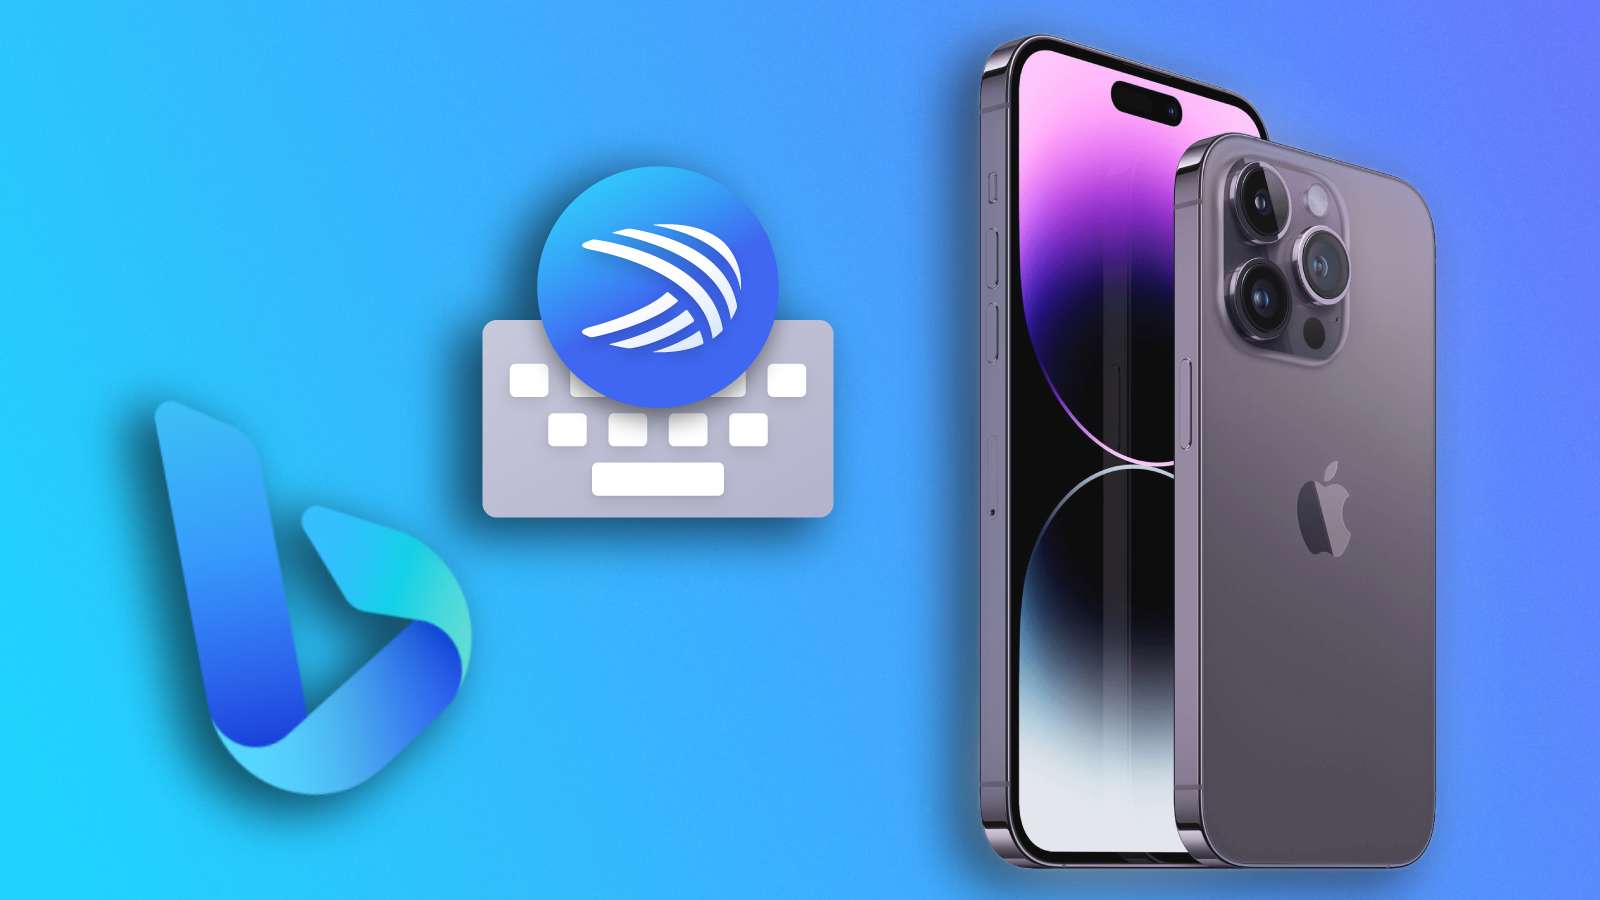 Bing logo, Swiftkey logo and iPhone on blue background